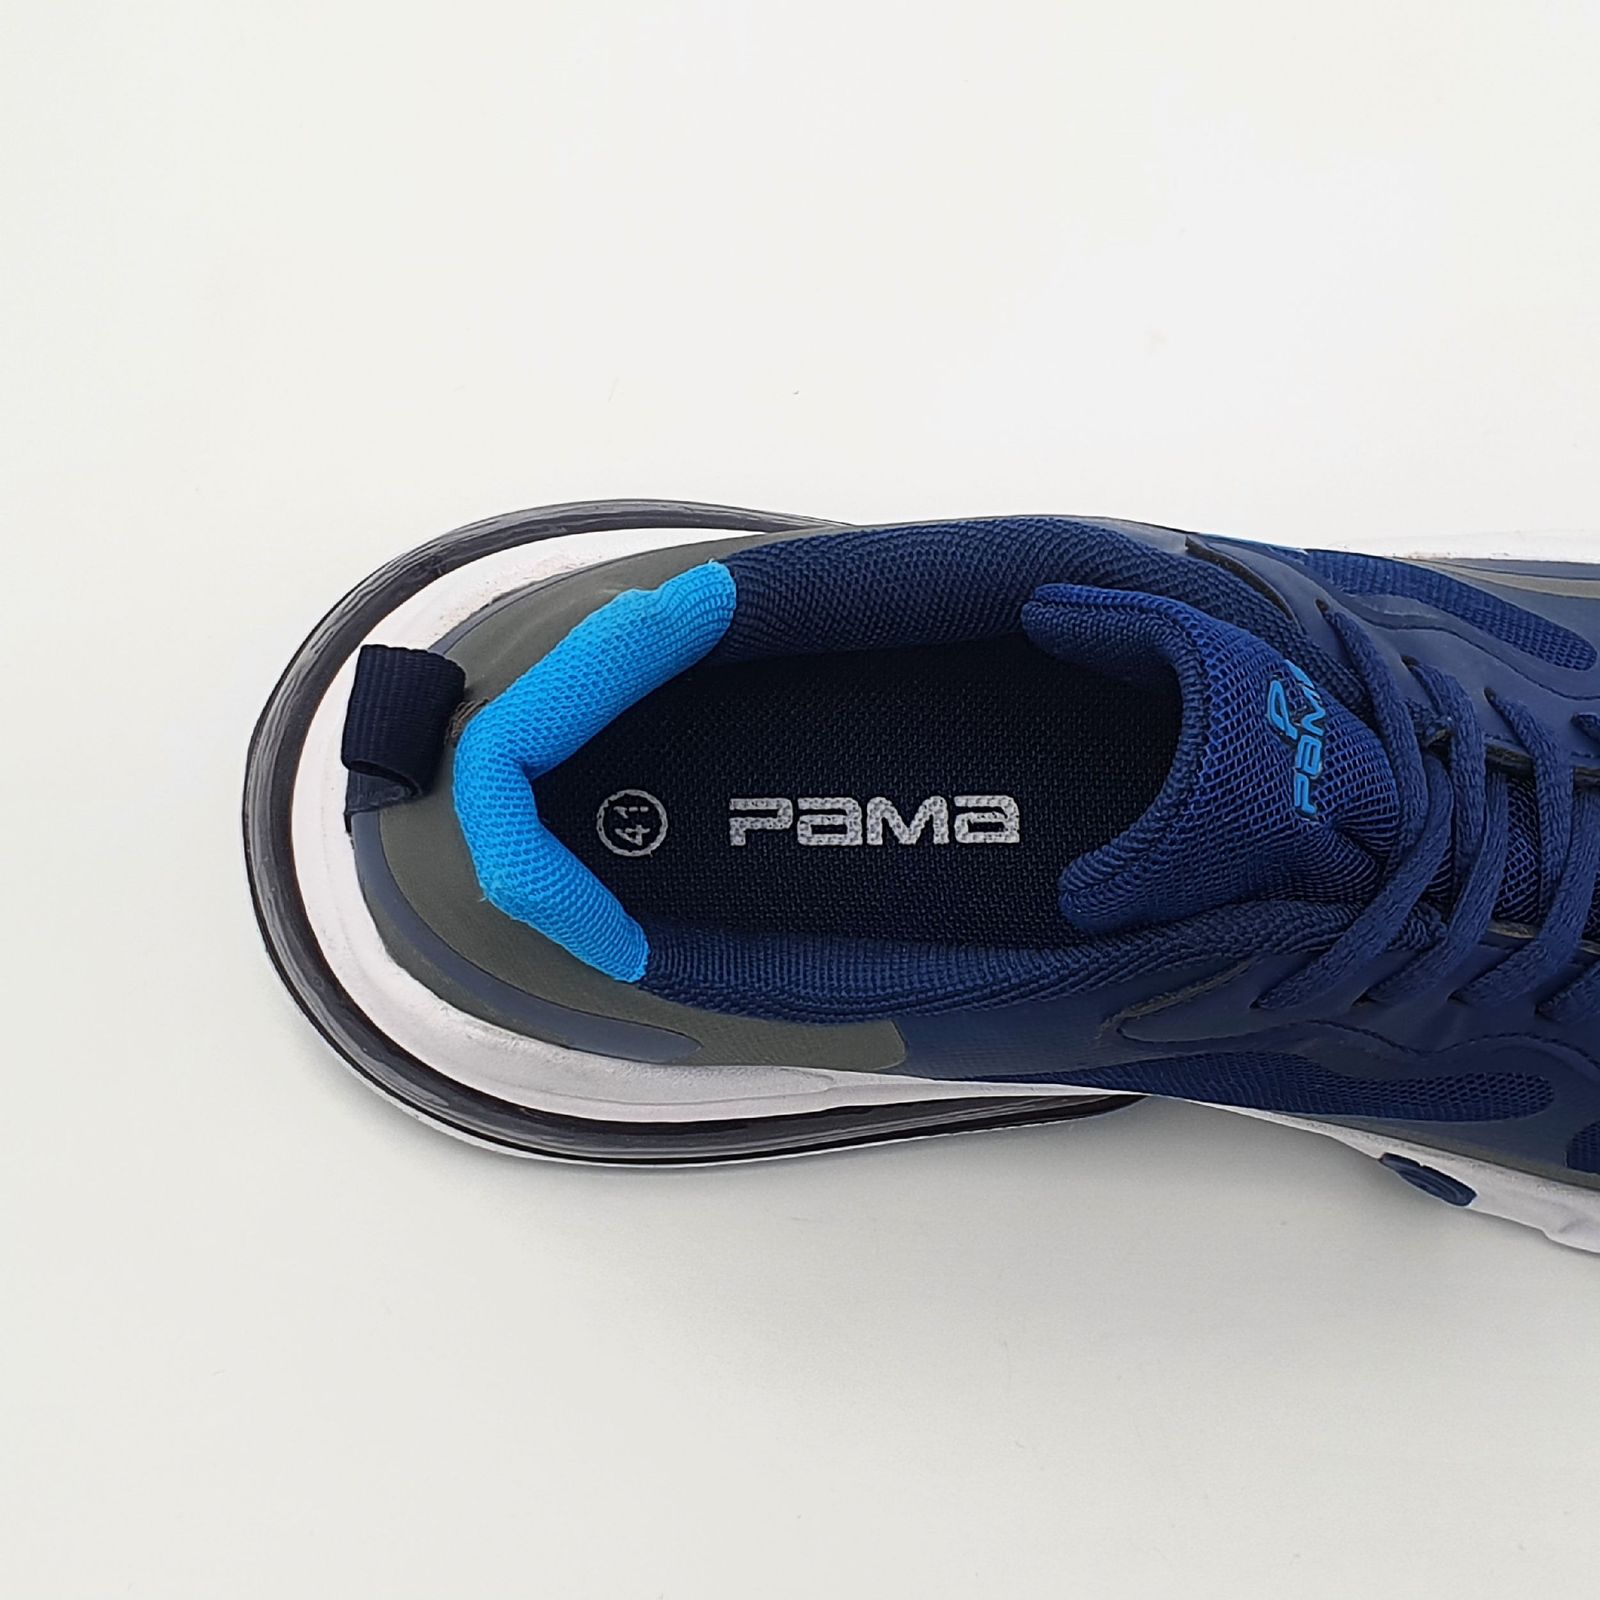 کفش پیاده روی مردانه پاما مدل VR-089 کد G1636 -  - 9